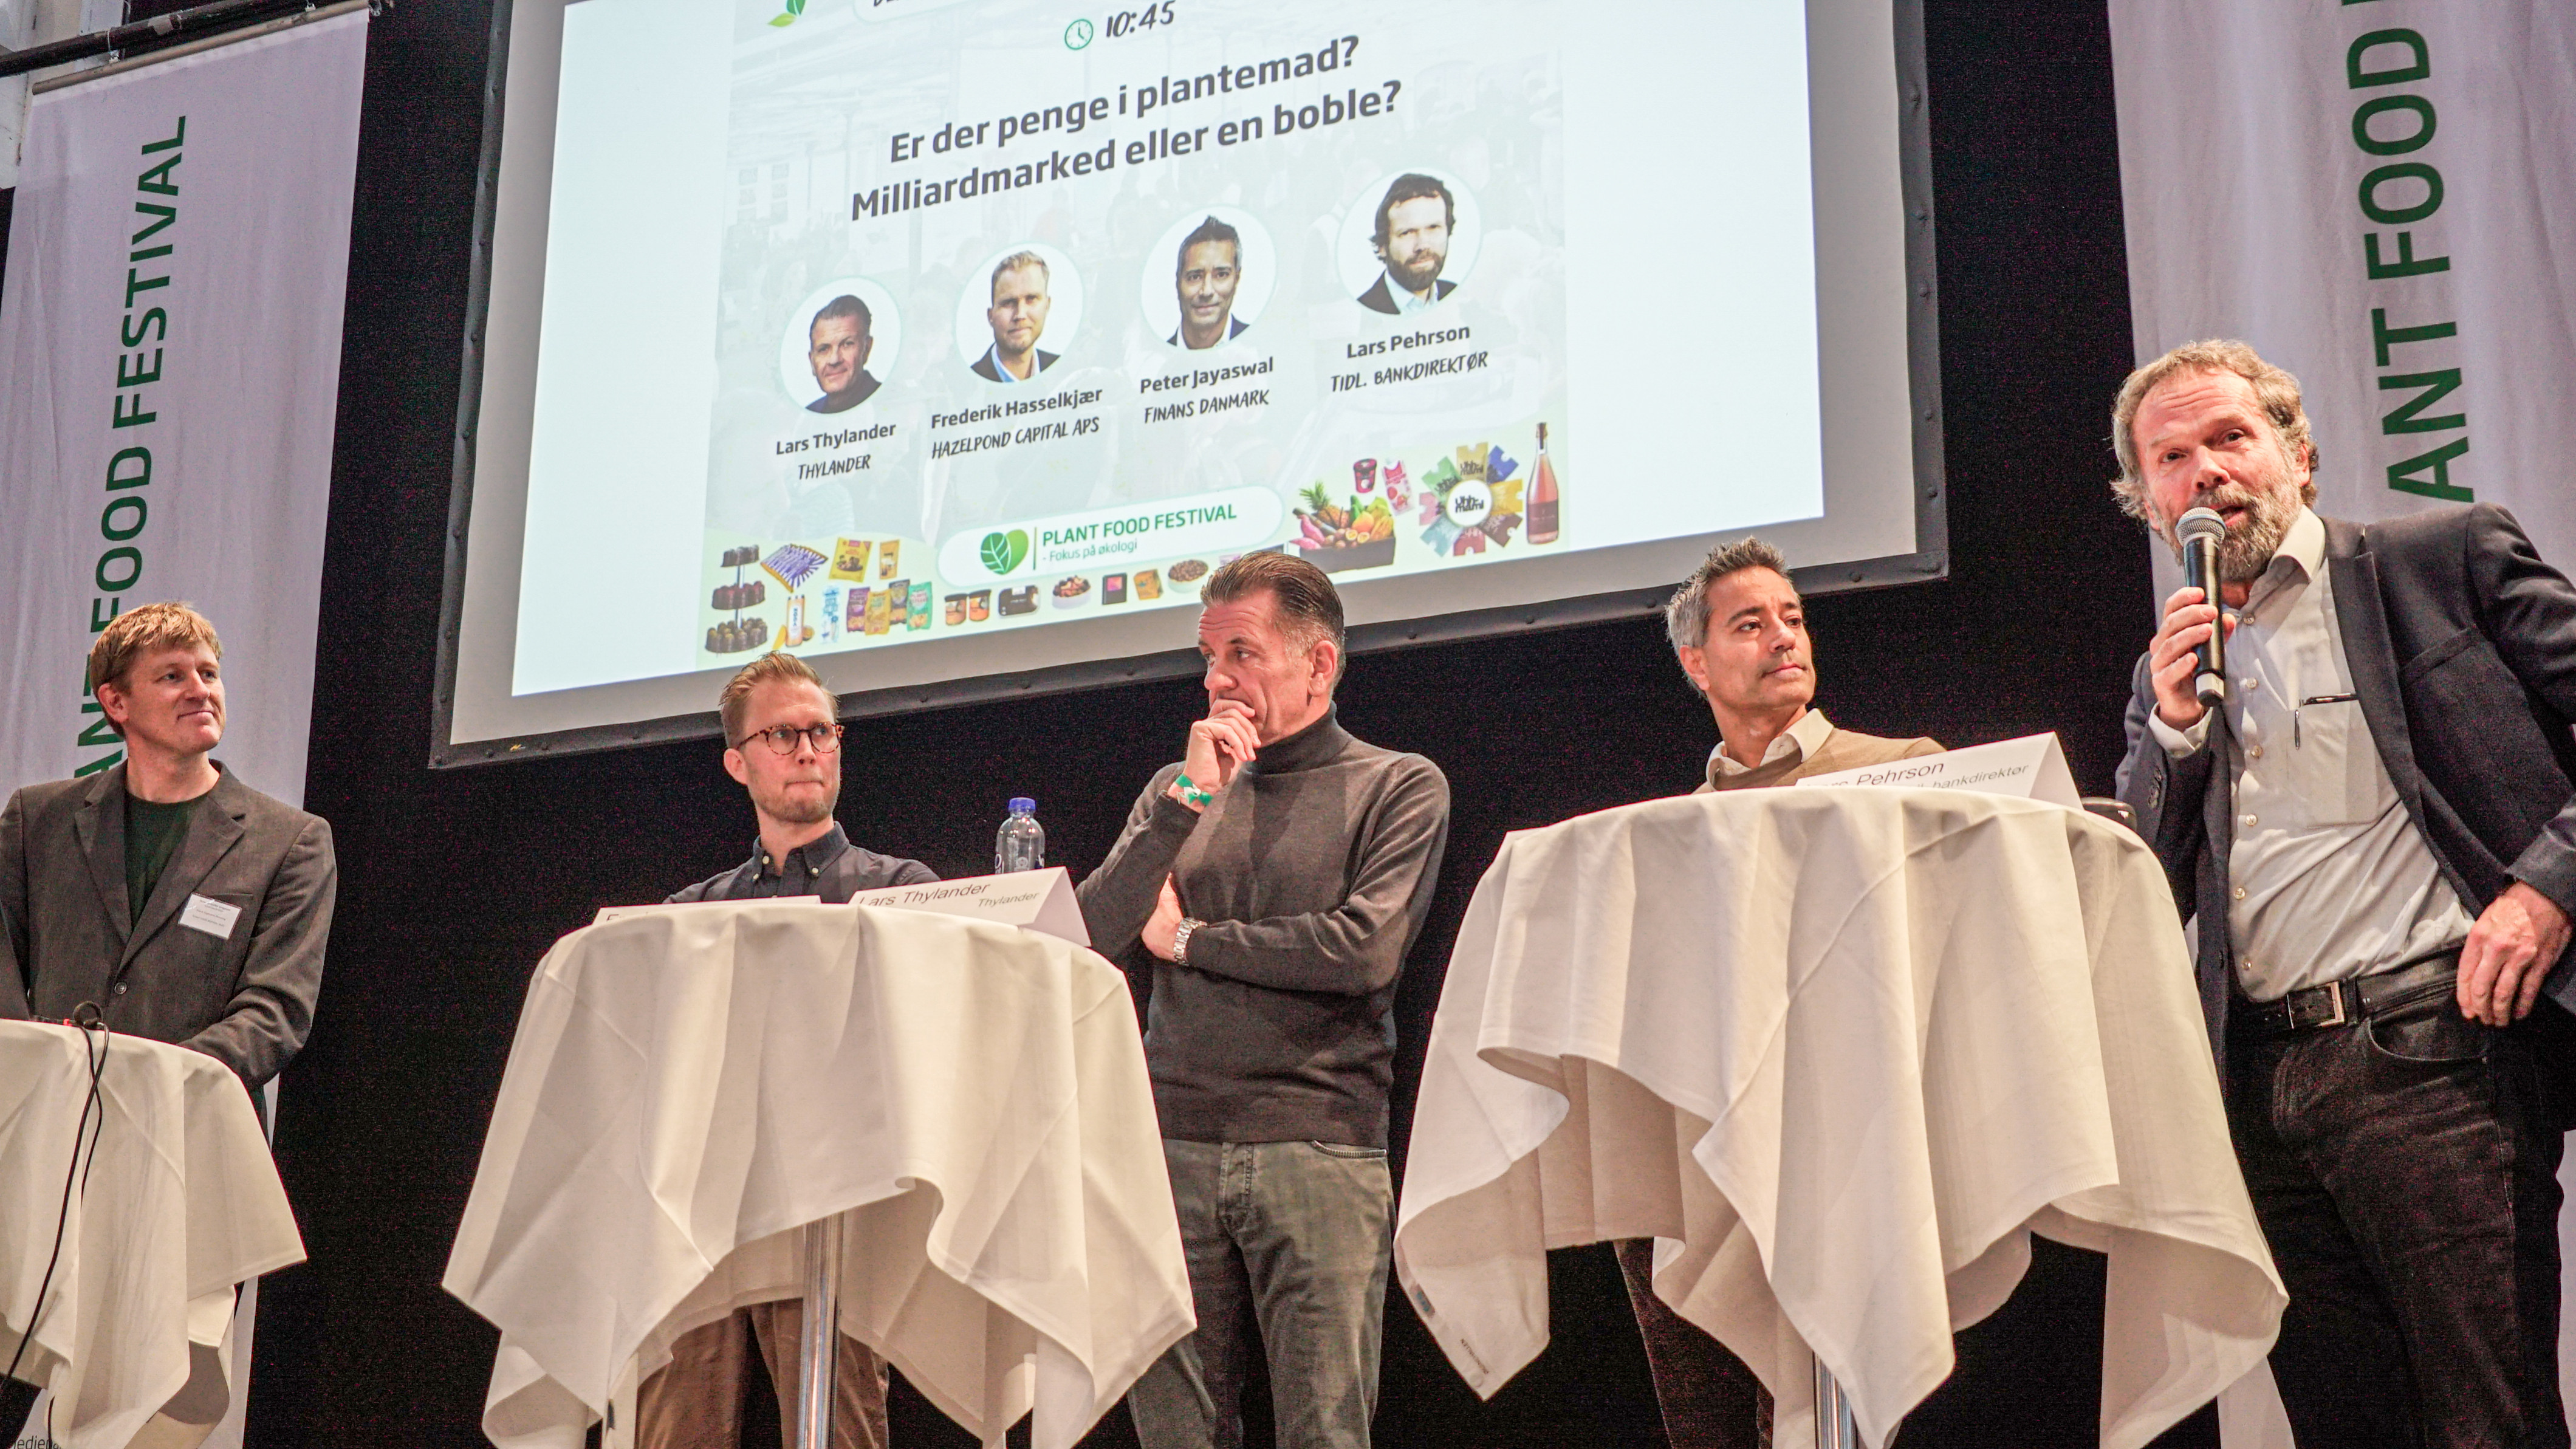 Paneldebat. Fra venstre: Ordstyrer Rune-Christoffer Dragsdahl, Frederik Hasselkjær, Lars Thylander, Peter Jayaswal og Lars Pehrson